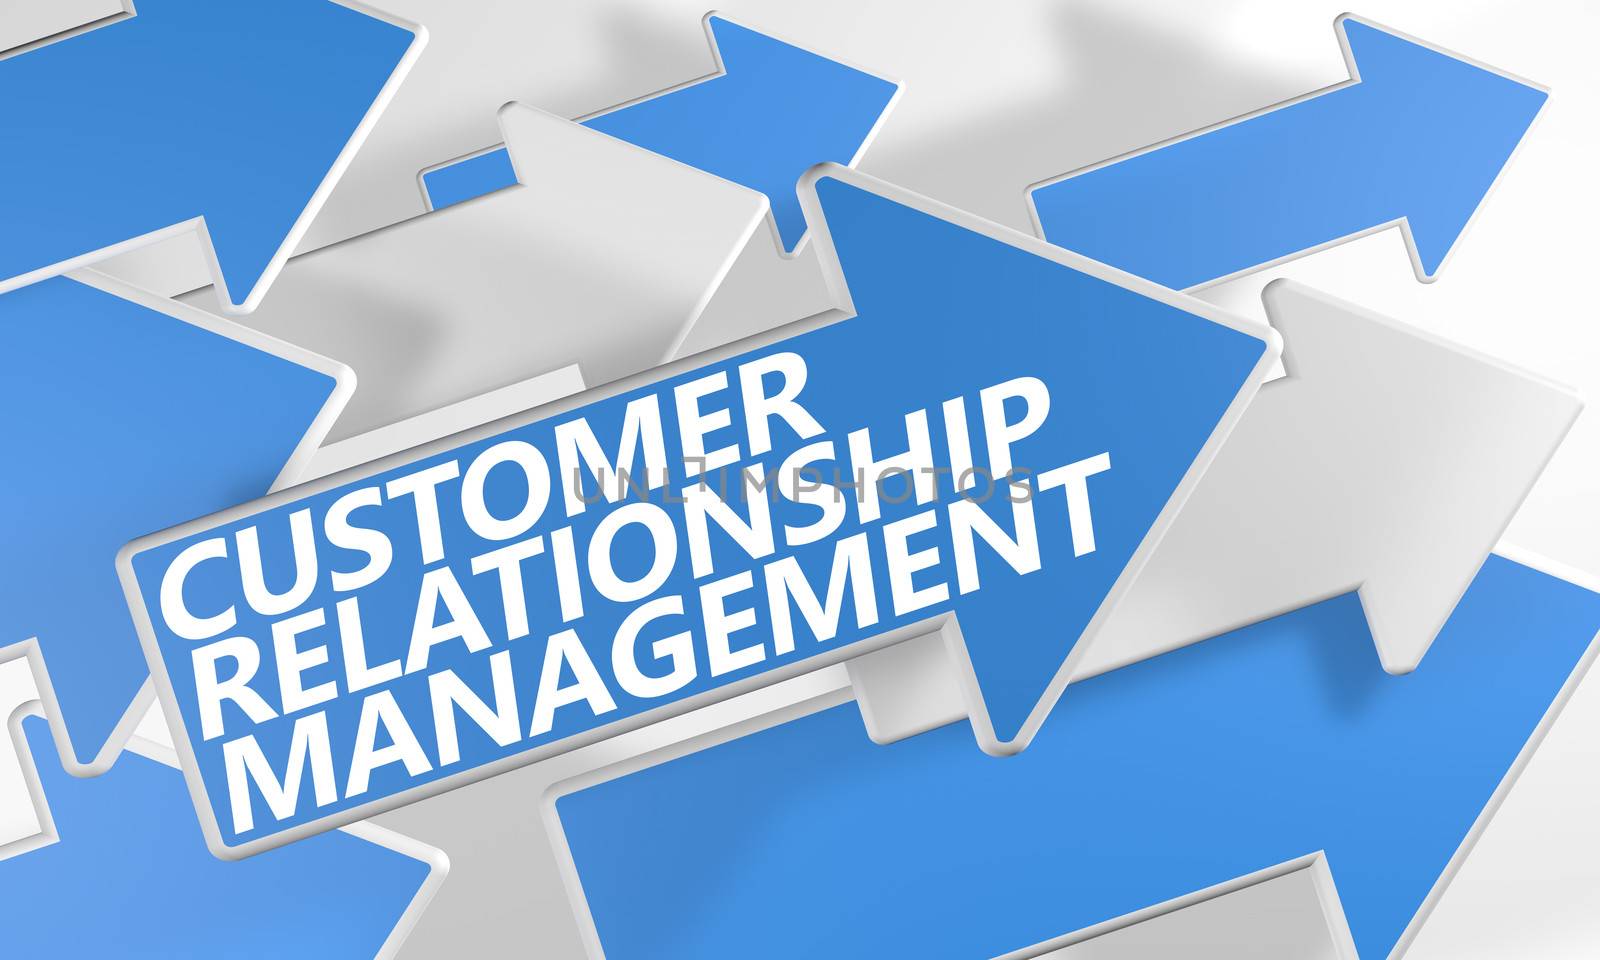 Customer Relationship Management by Mazirama